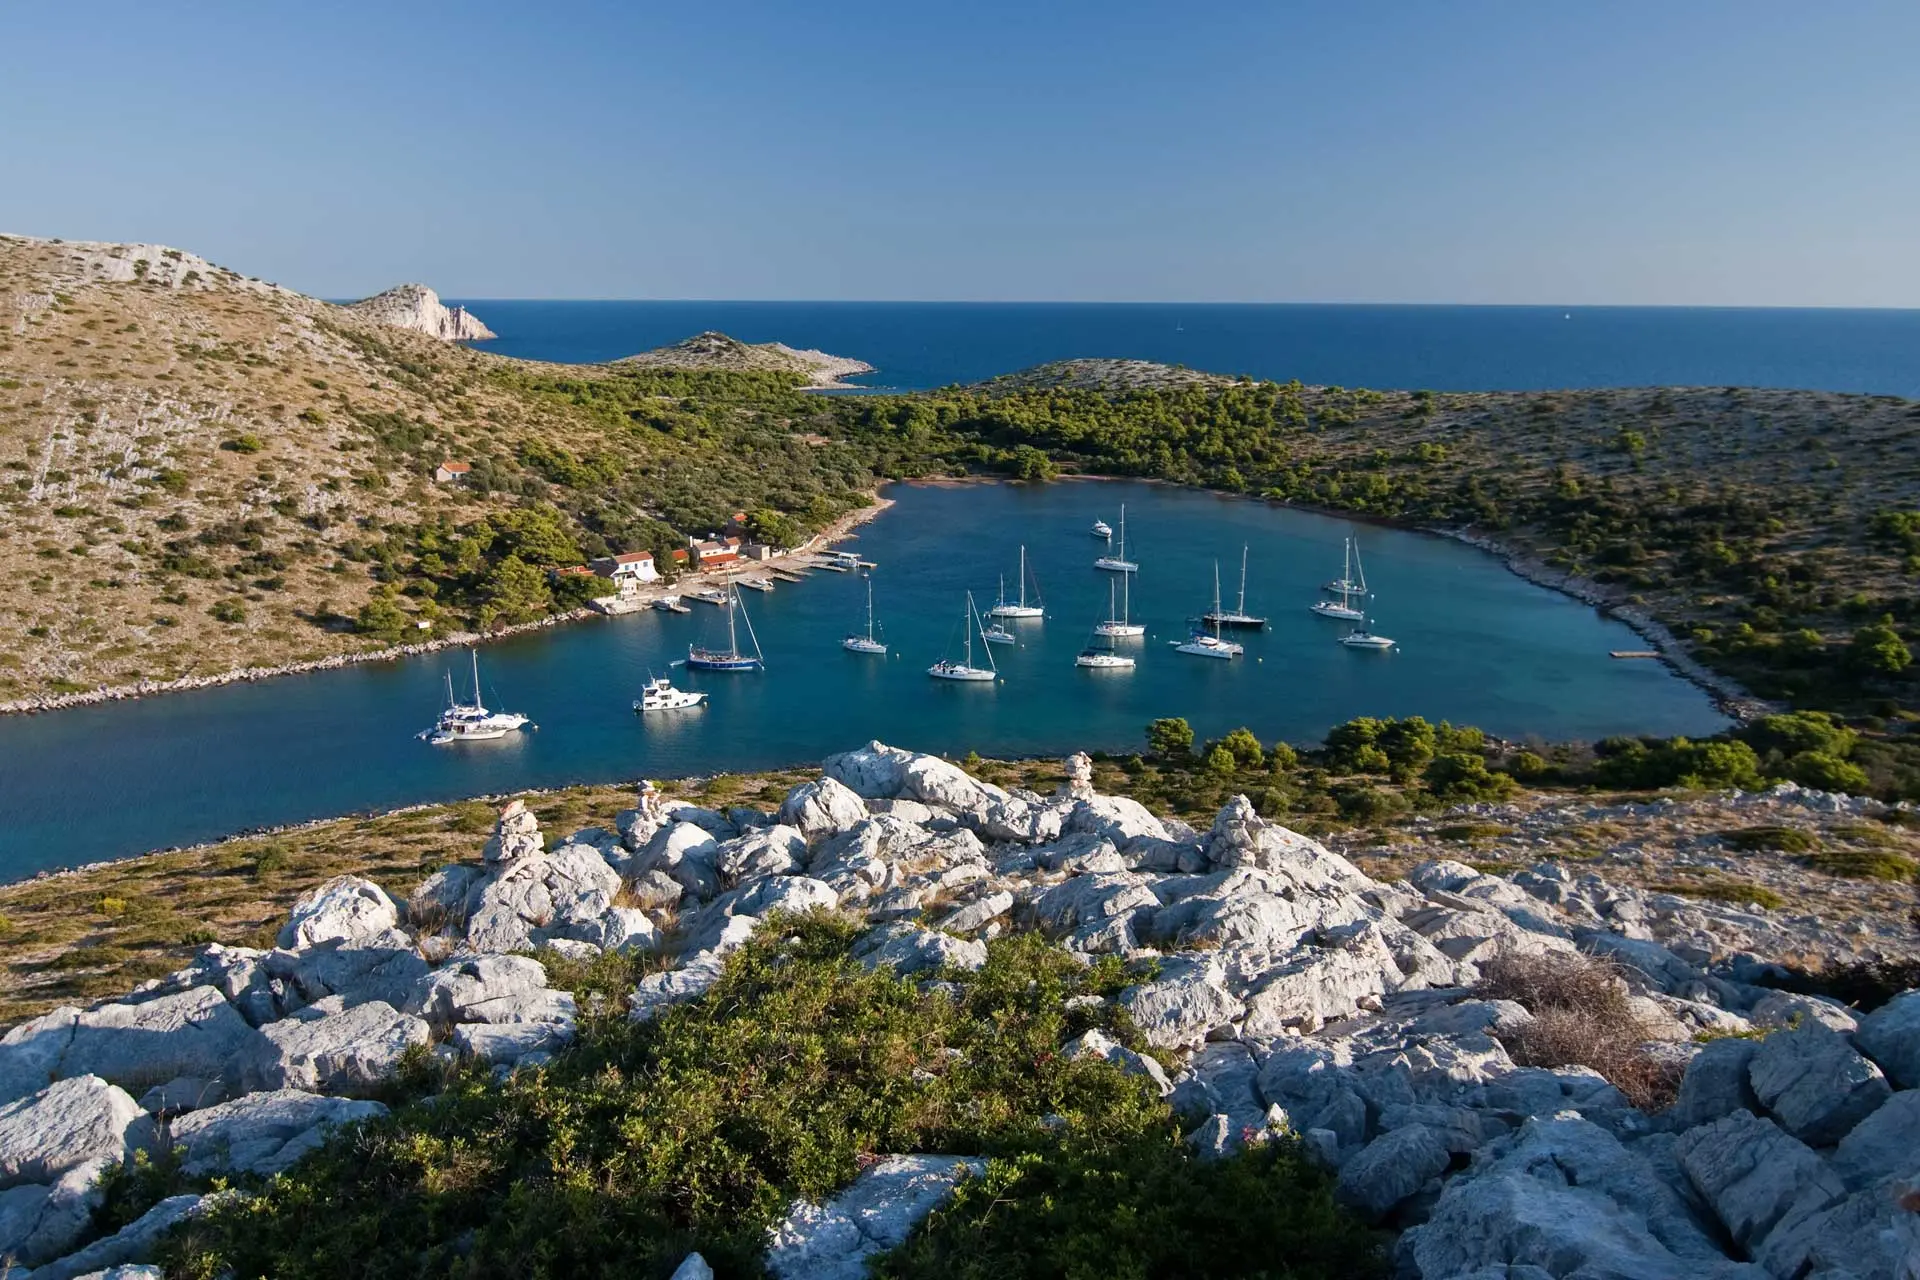 Sailing Kornati islands